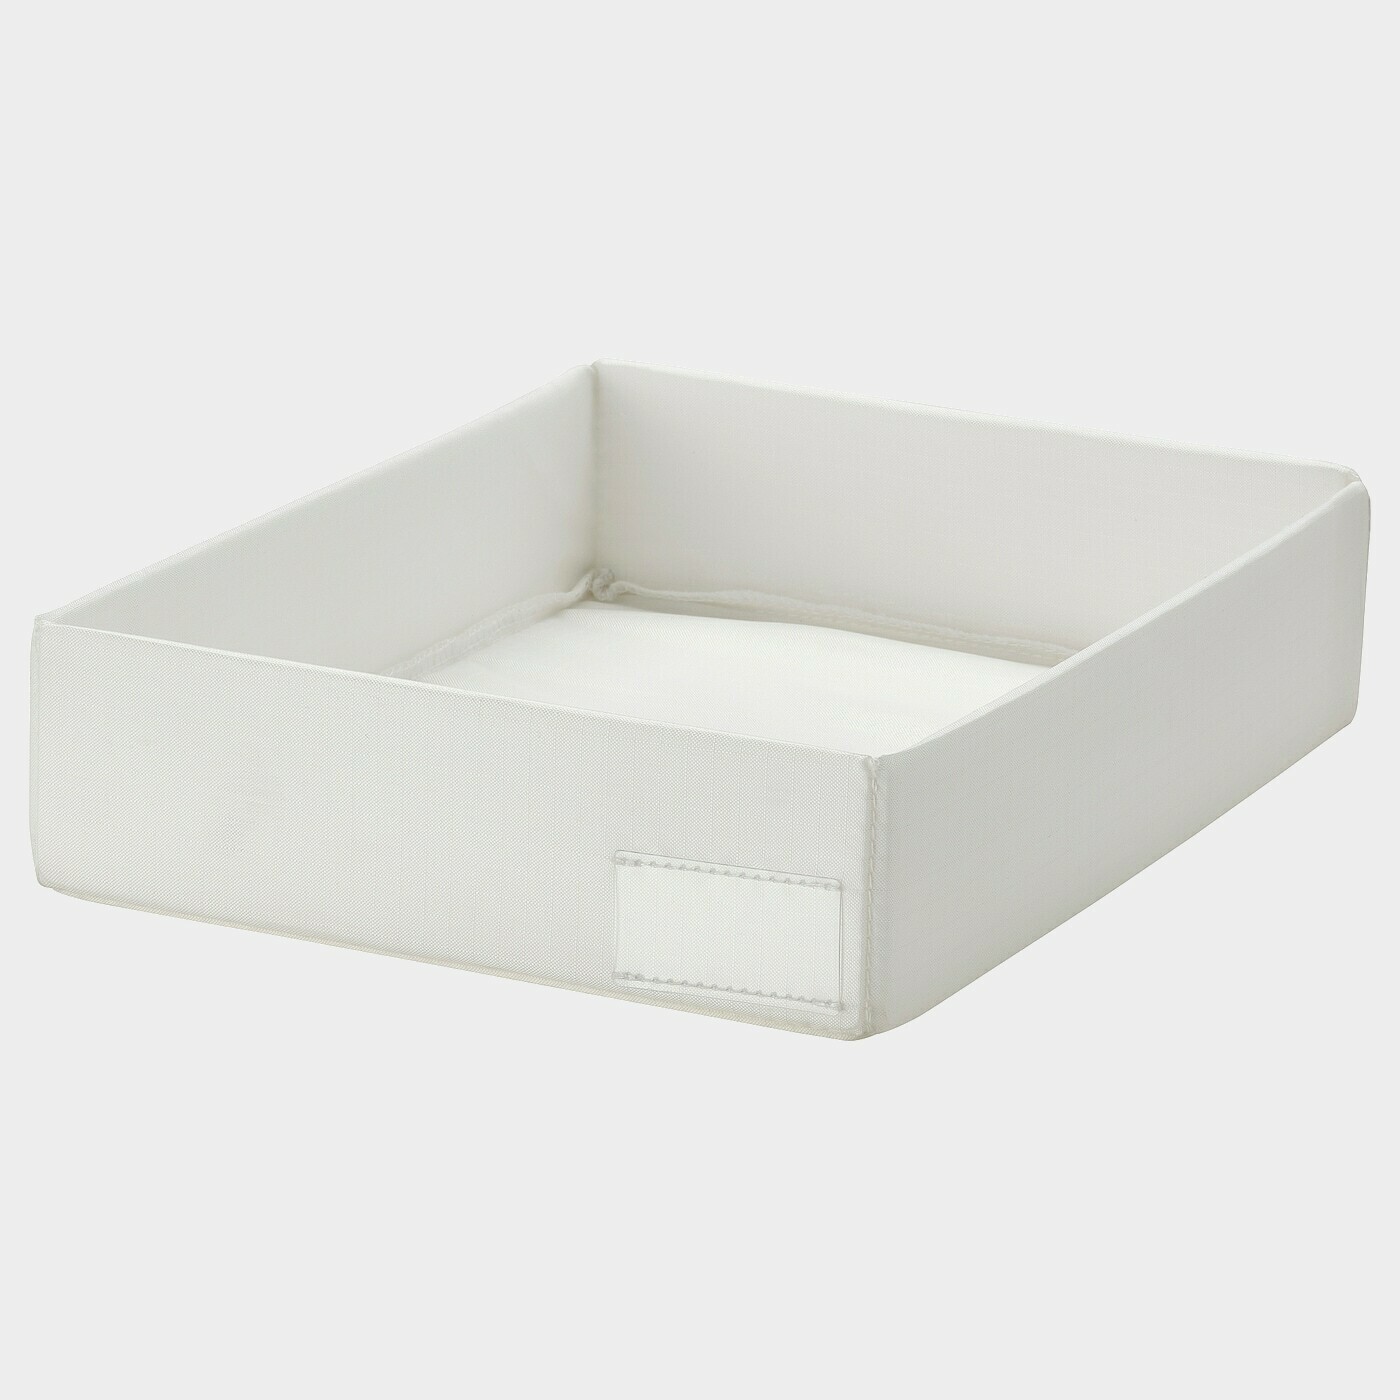 STUK Sortierbox  -  - Möbel Ideen für dein Zuhause von Home Trends. Möbel Trends von Social Media Influencer für dein Skandi Zuhause.